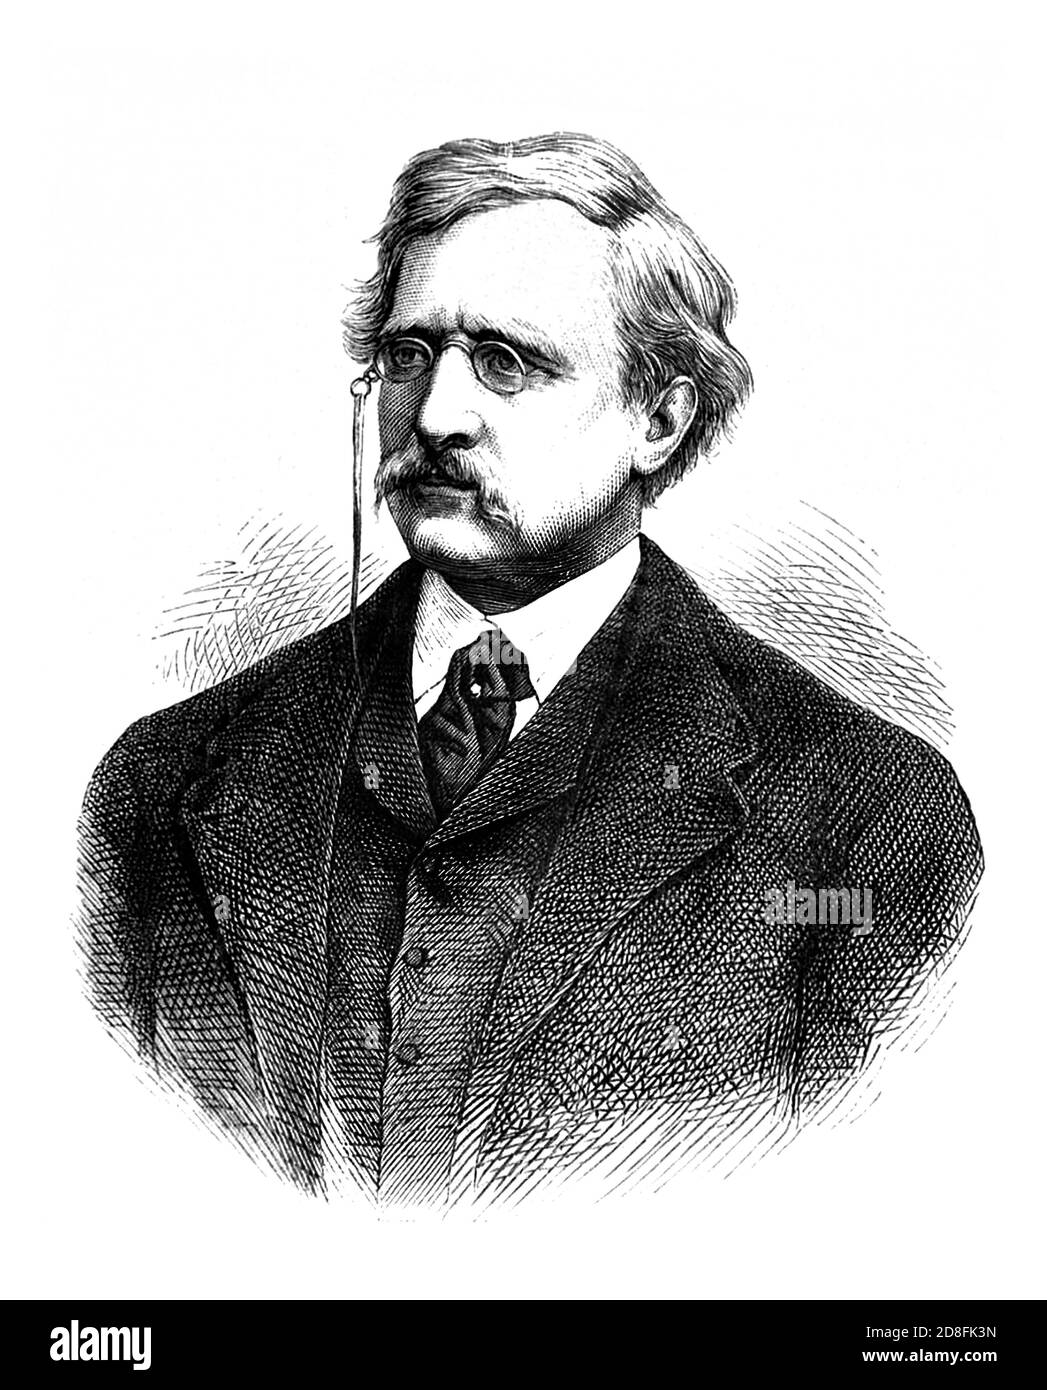 1879, SWEDEN : The swedish Arctic explorer , geologist , mineralogist Baron ADOLF ERIK Von NORDENSKIOLD ( Freiherr Nordenskiöld , 1832 - 1901 ). Portrait by unknown engraver . - SVEZIA - FINLANDIA - FINLAND - Finnish - ESPLORATION - EXPLORATIONS - ESPLORAZIONE ARTIDE - North Pole - POLO NORD - ESPLORATORE - MINERALOGY - MINERALOGIA - GEOLOGO - GEOLOGY - GEOLOGIA - ritratto - portrait - baffi - moustache - engraving - incisione - nobili svedesi - nobility - Barone - occhiali da vista - lens - cravatta - tie --- Archivio GBB Stock Photo